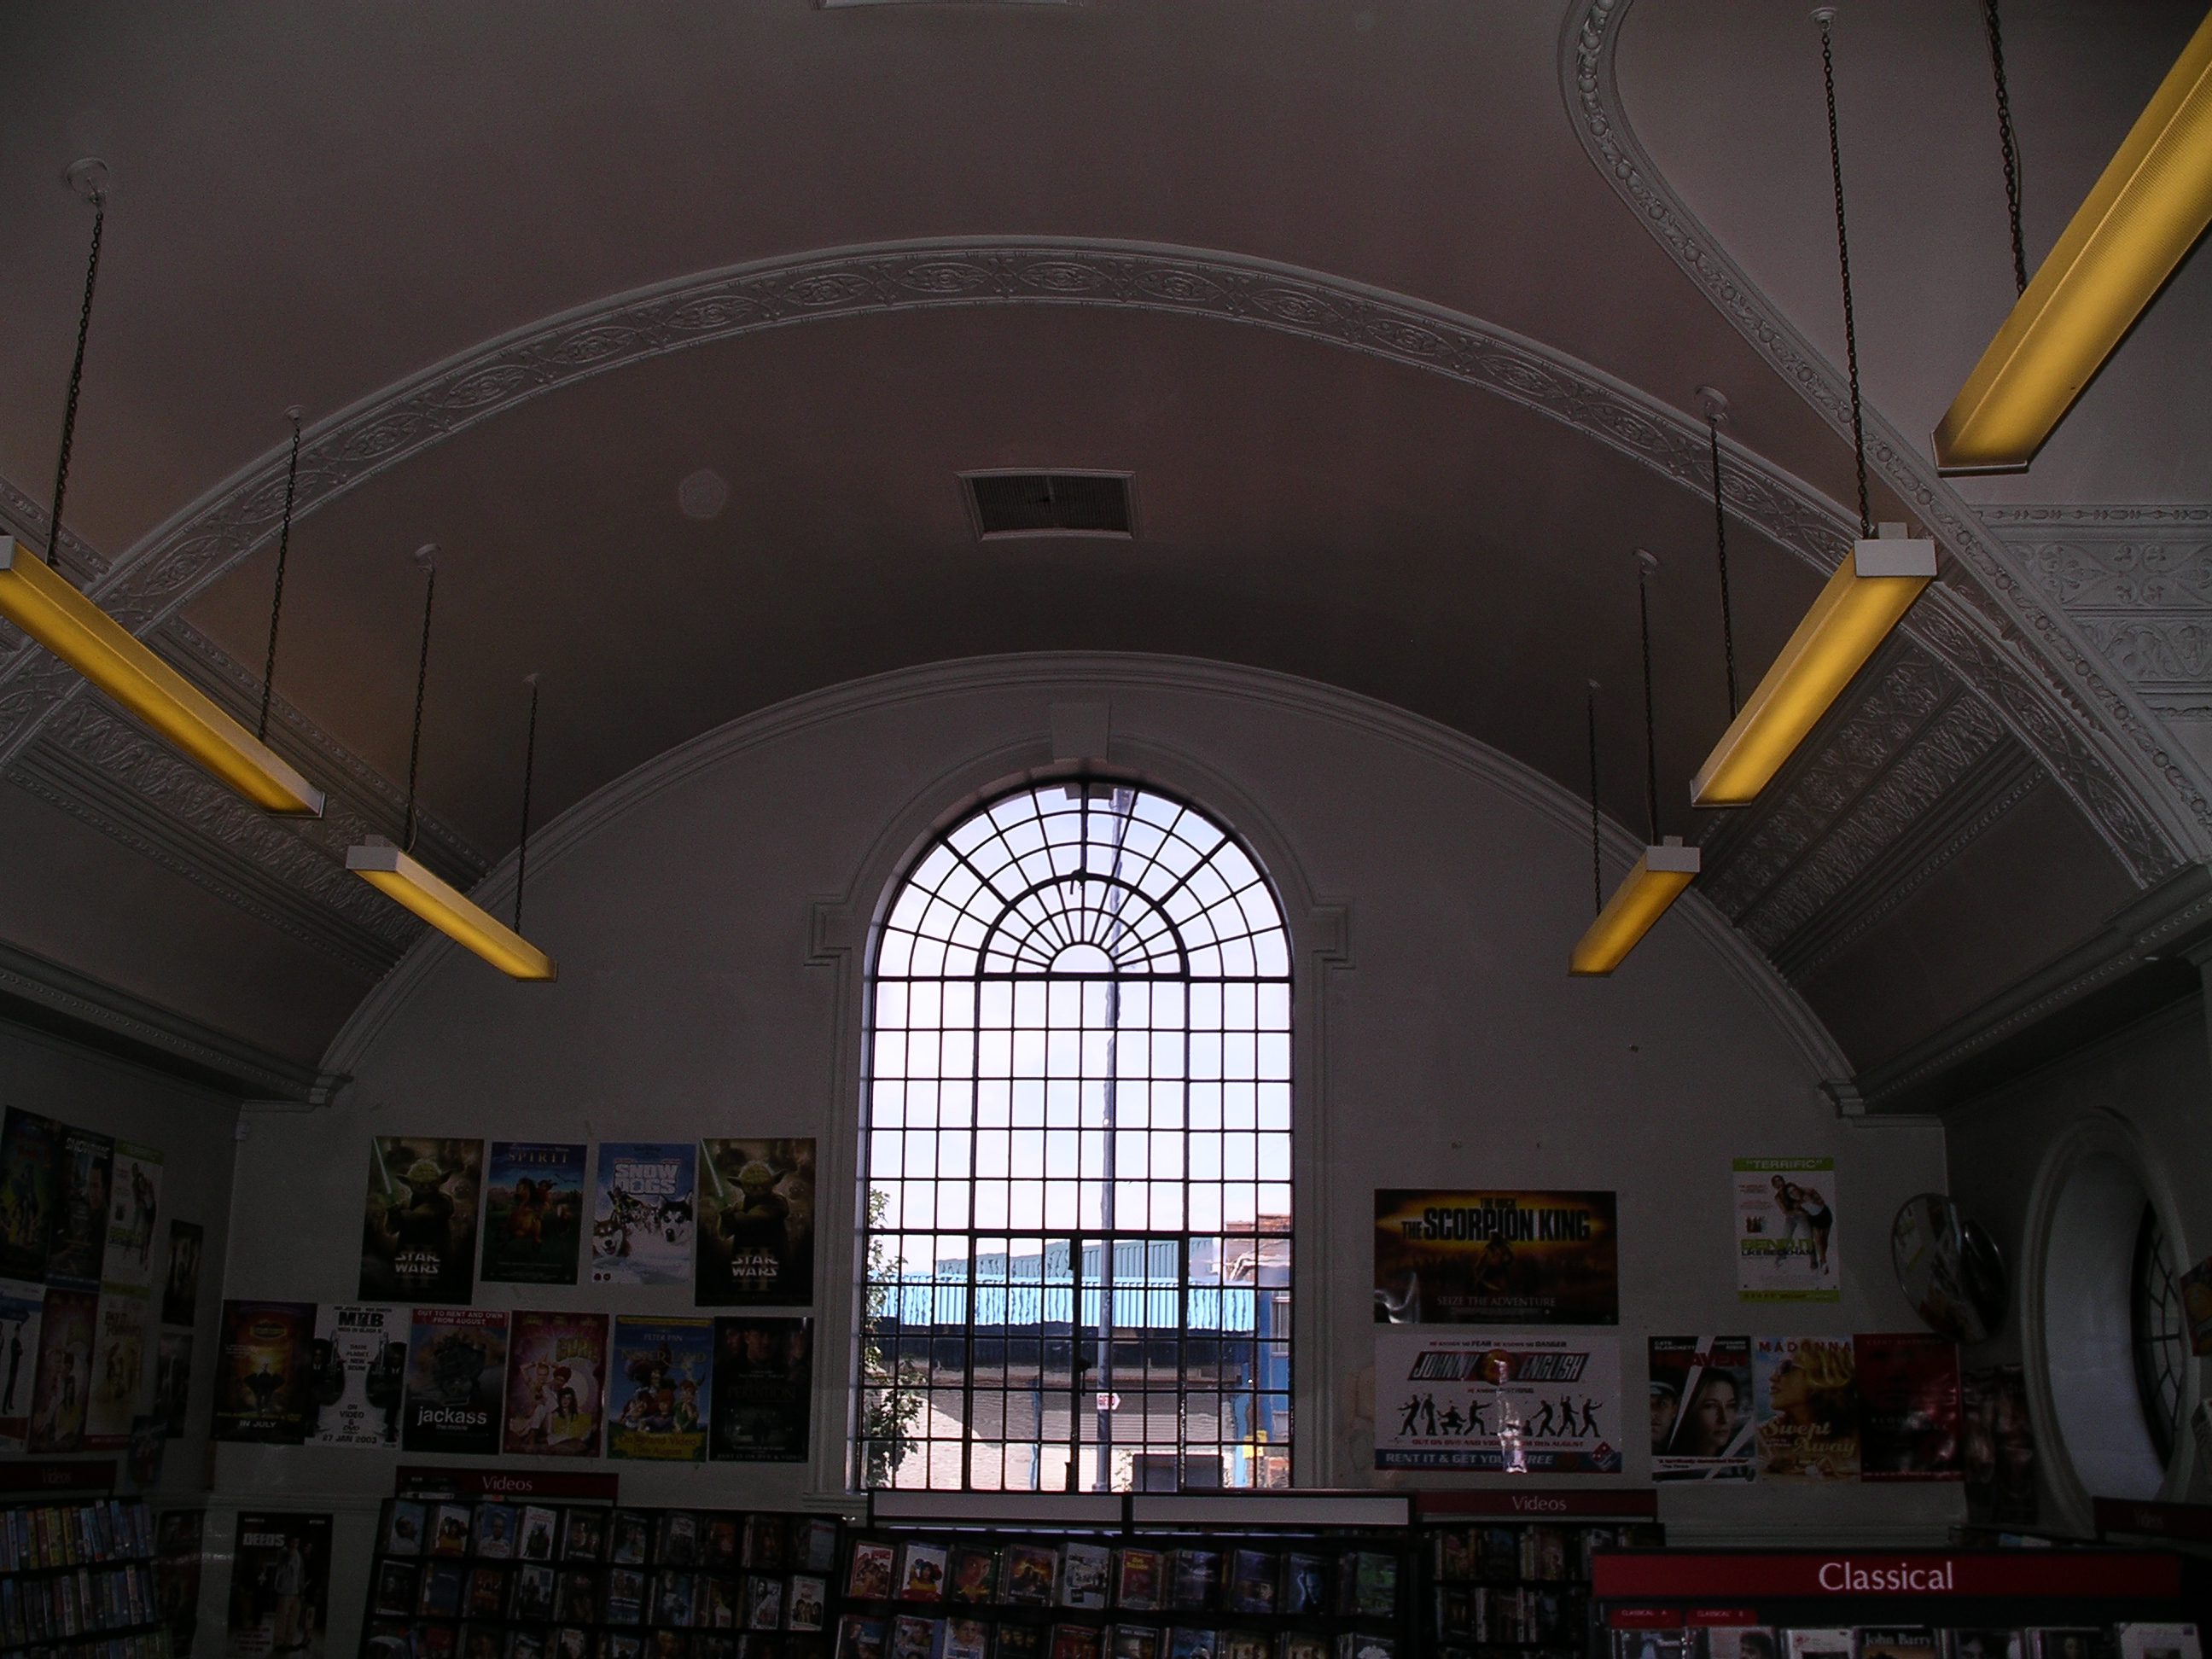 Drury Lane Library, Wakefield